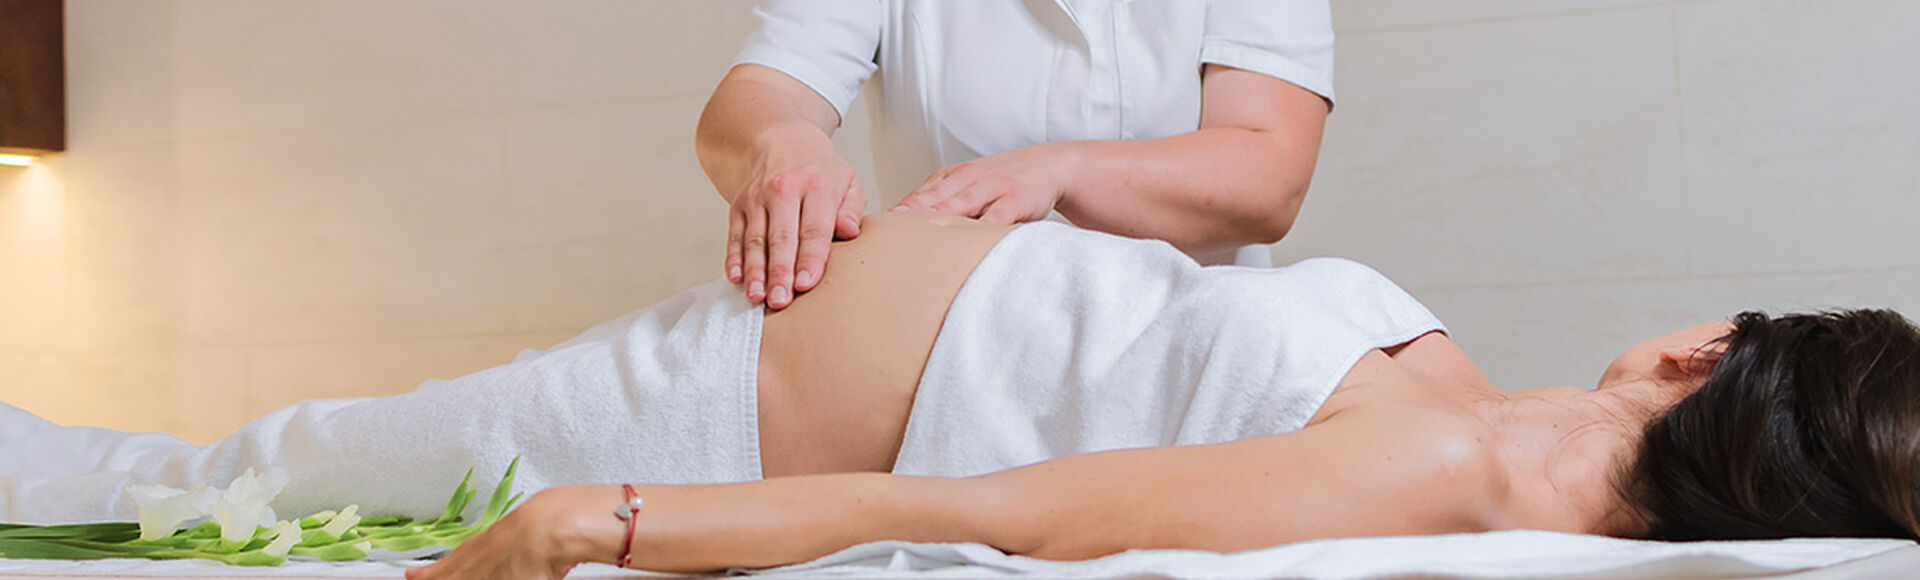 Mulher grávida deitada recebendo massagem na barriga